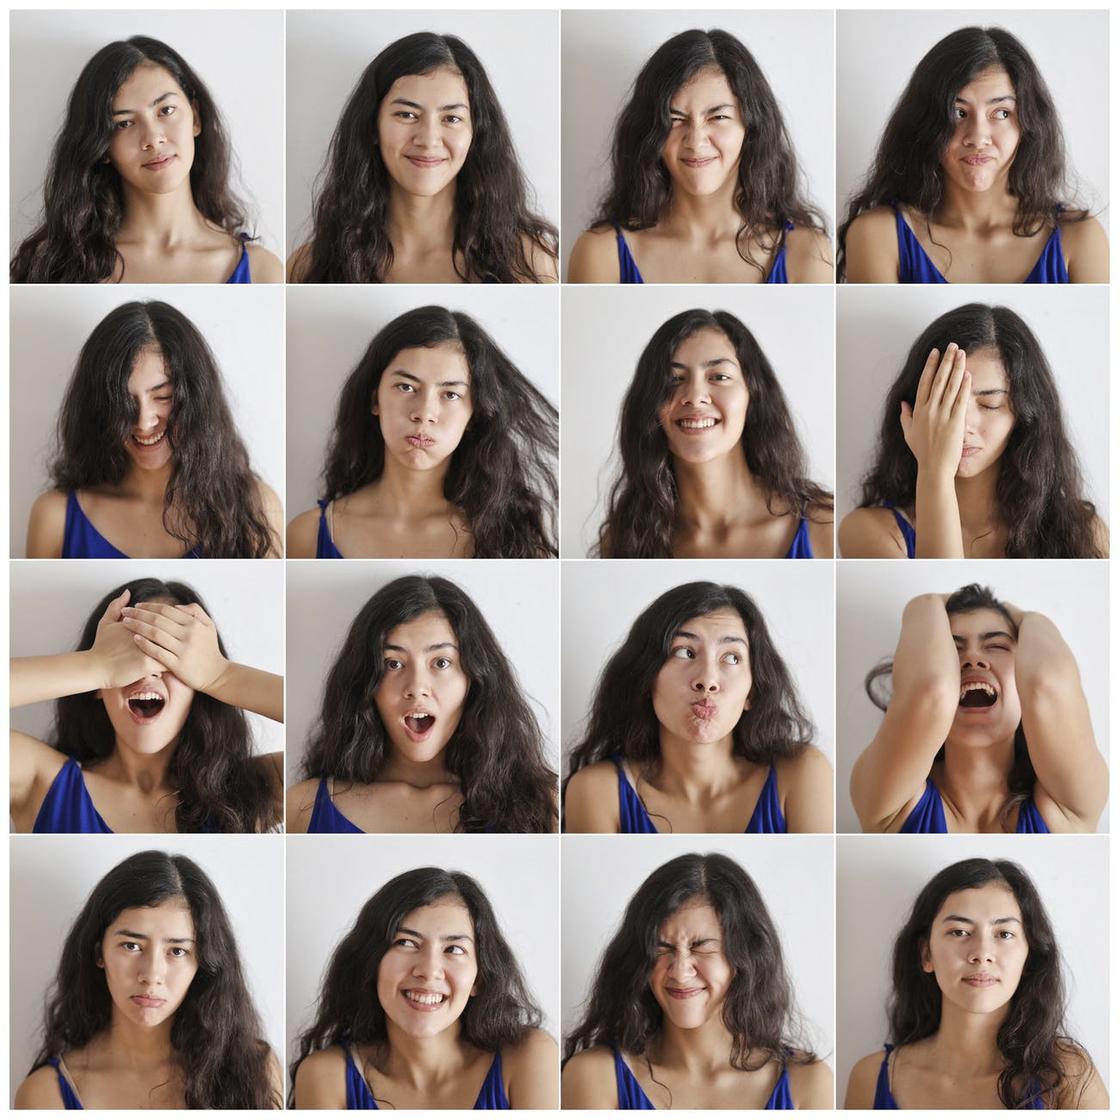 Подборка фотографии девушки с разными эмоциями на лице